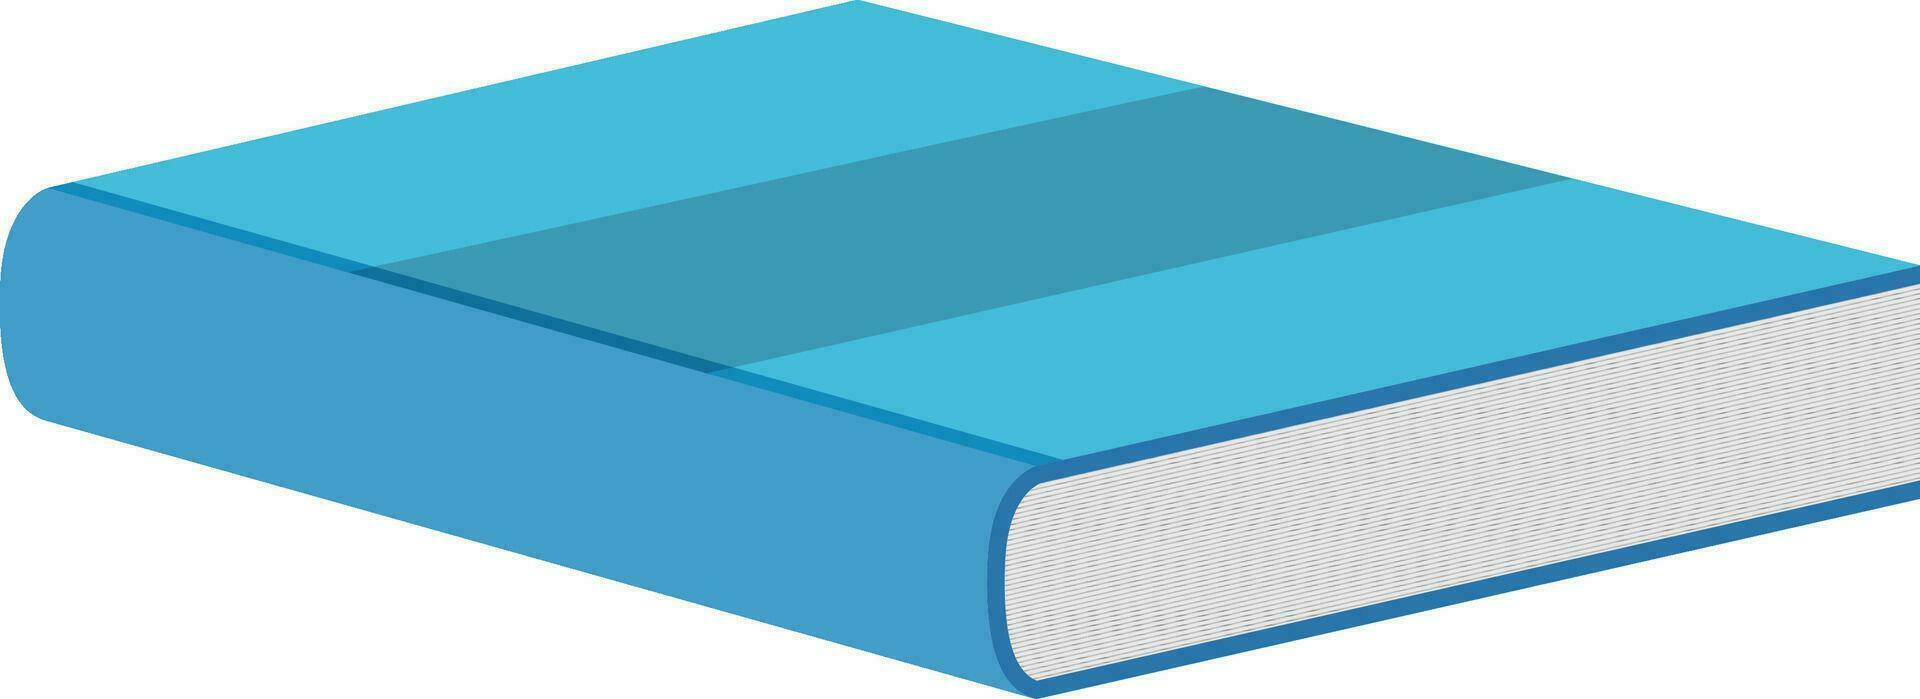 illustration av stängd bok i himmel blå Färg. vektor